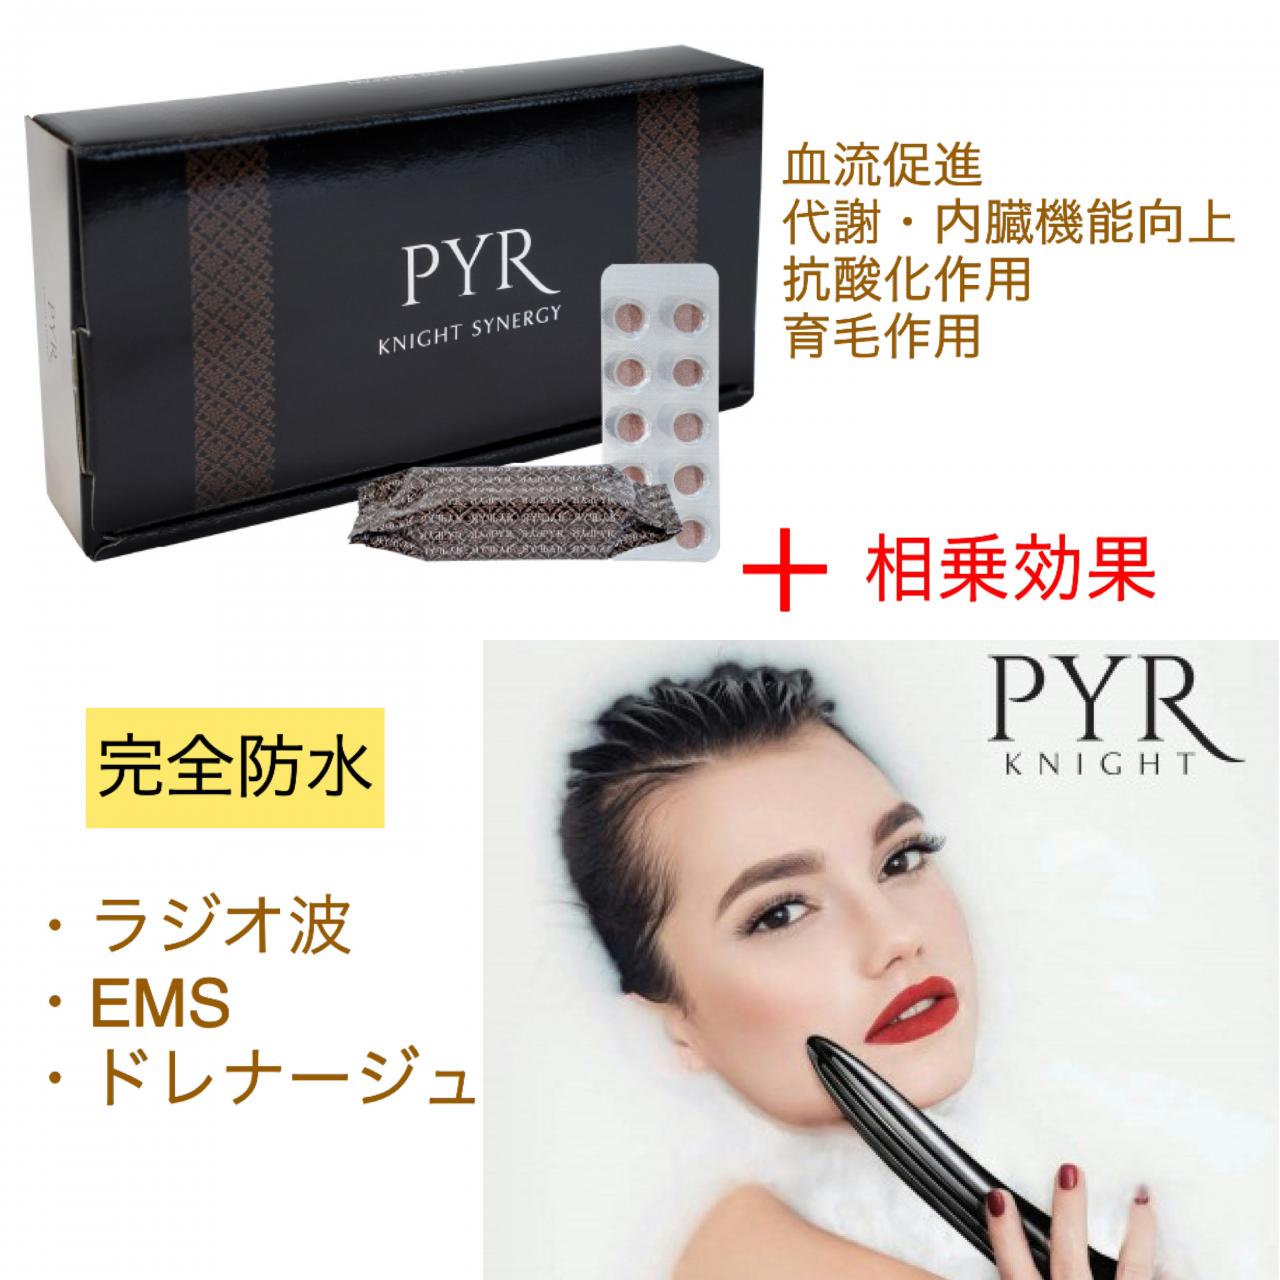 パイラナイト PYR KNIGHT - 美容機器